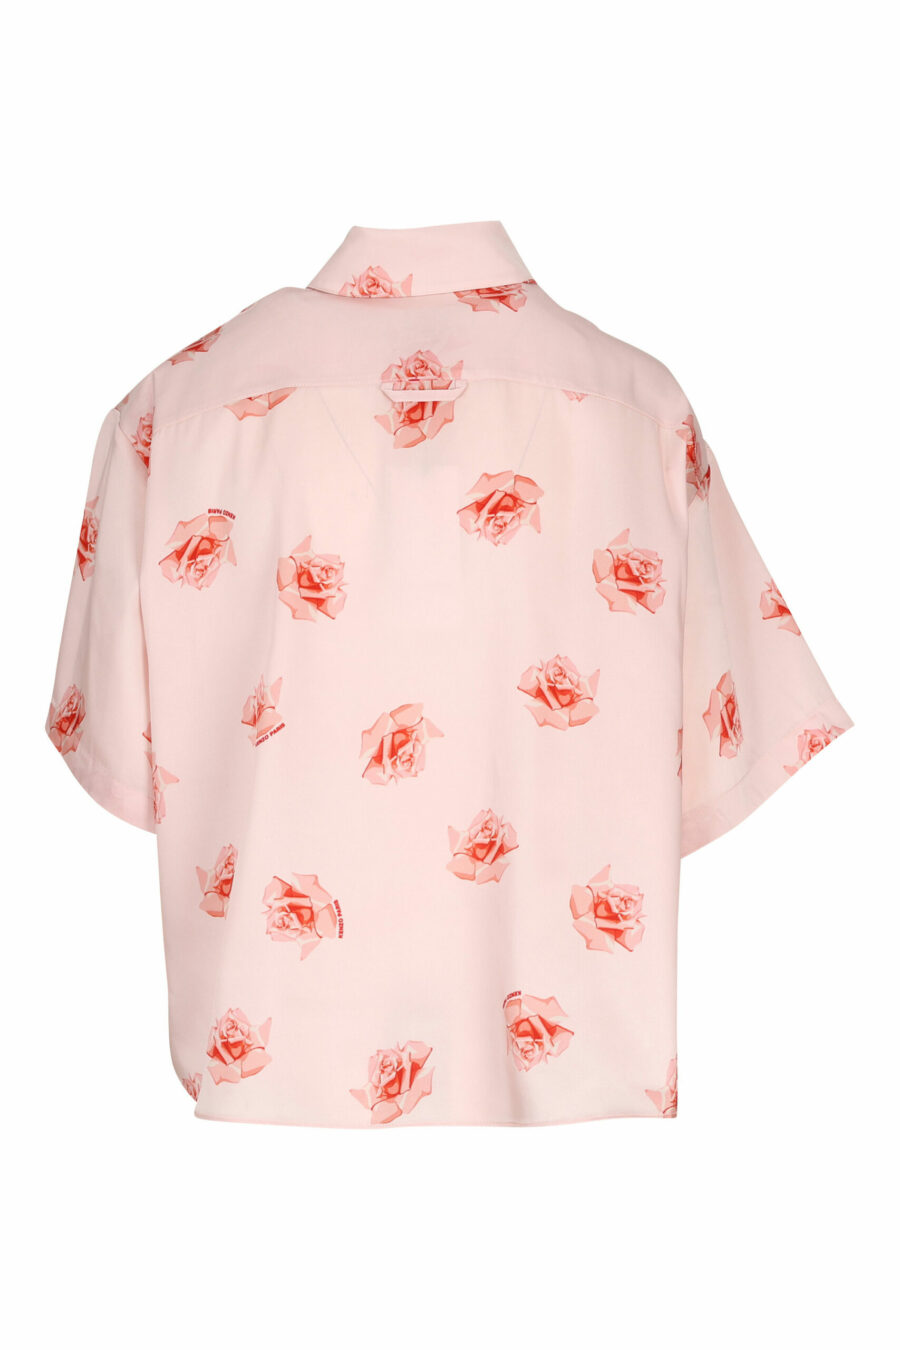 Camisa de manga curta cor-de-rosa com o logótipo "kenzo rose" - 3612230604797 1 scaled